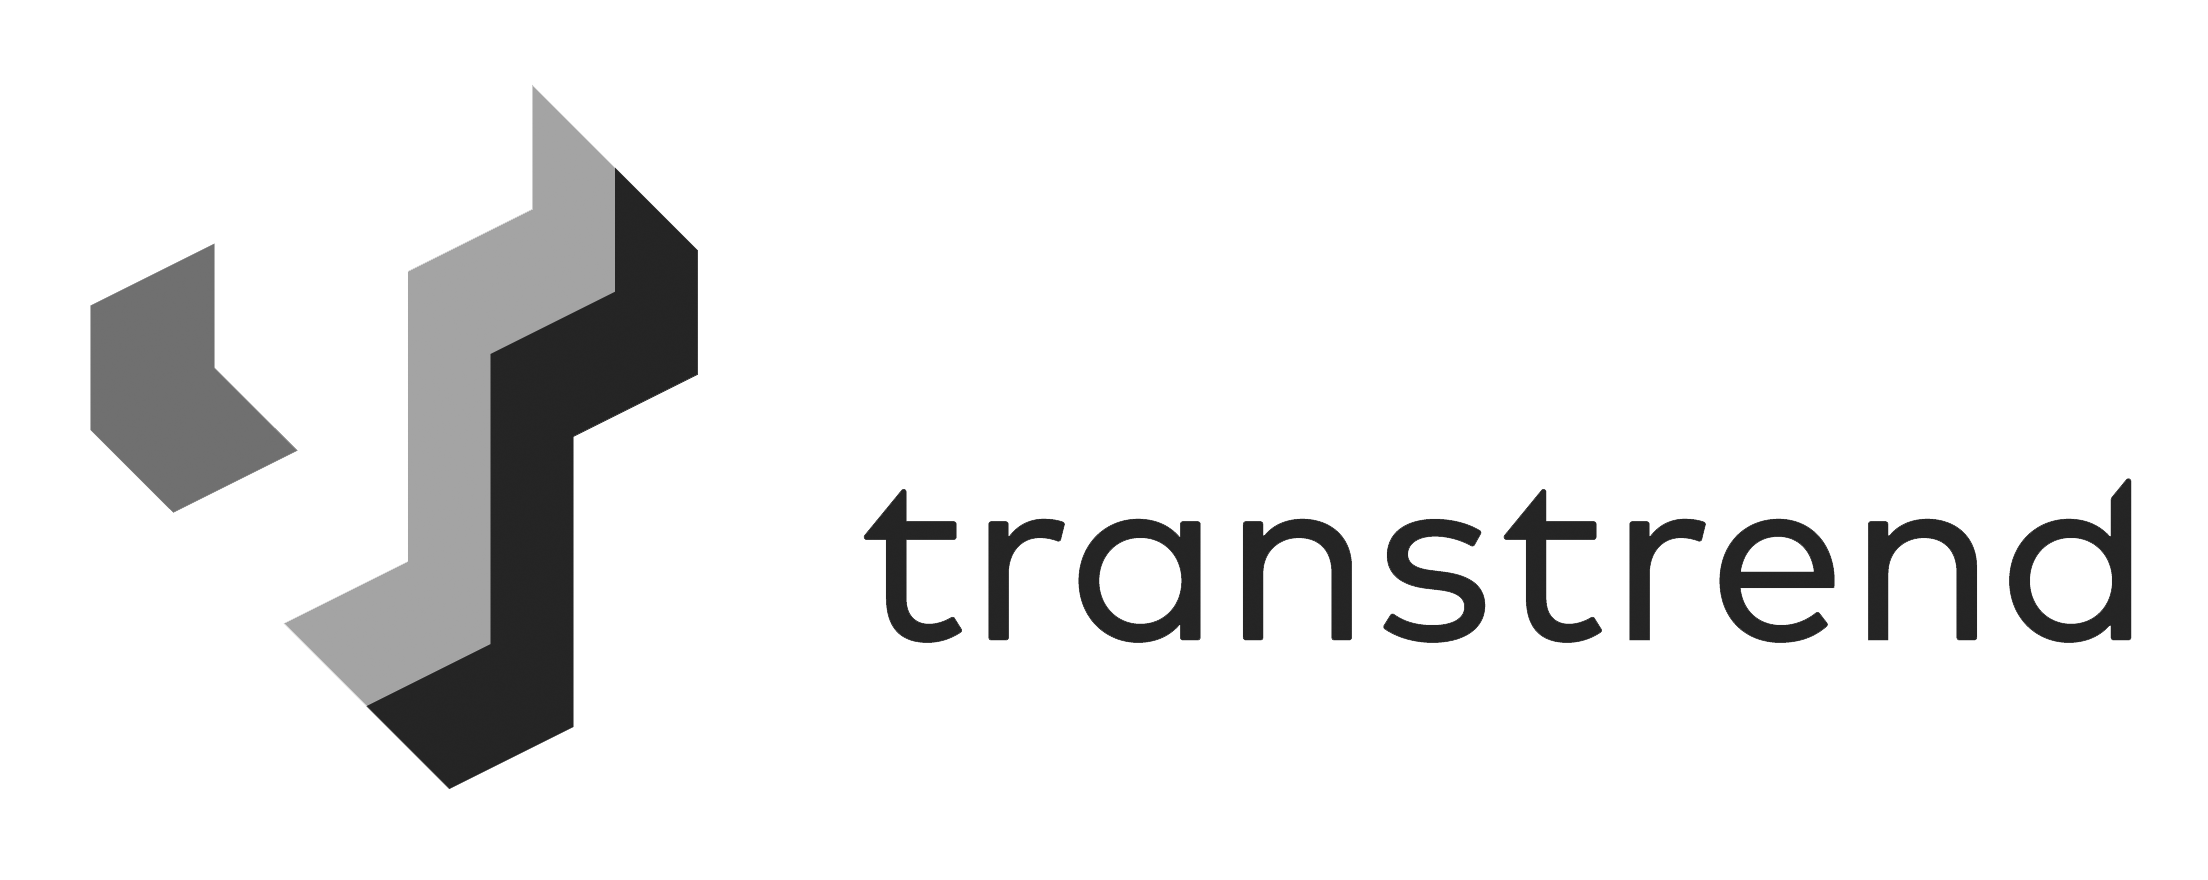 Transtrend -1008af-